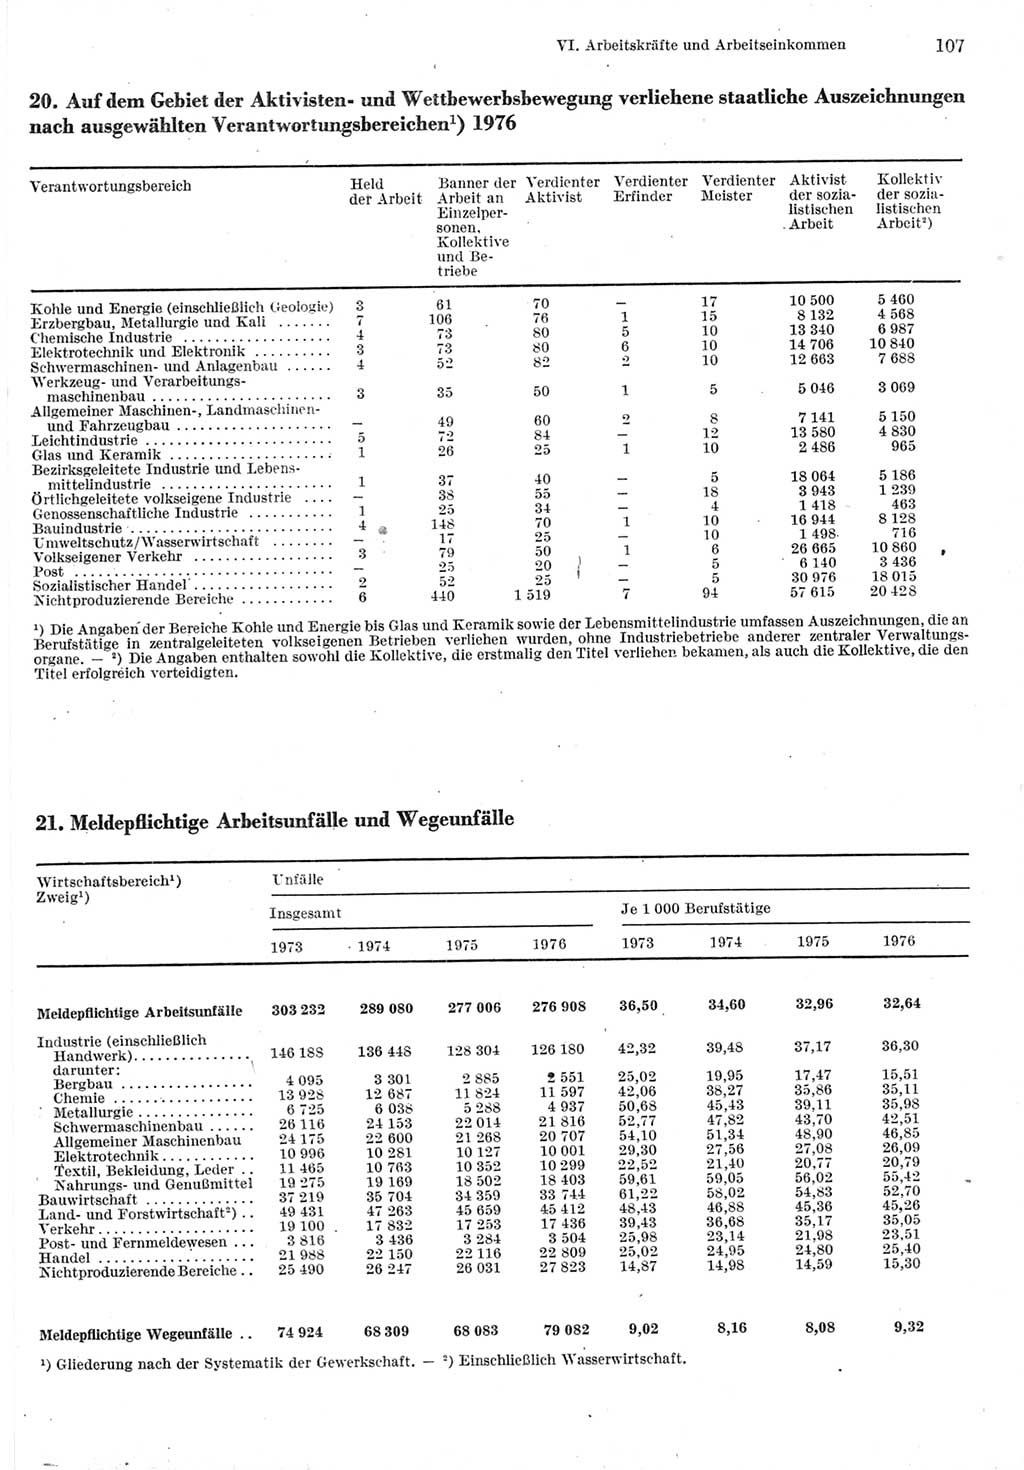 Statistisches Jahrbuch der Deutschen Demokratischen Republik (DDR) 1977, Seite 107 (Stat. Jb. DDR 1977, S. 107)